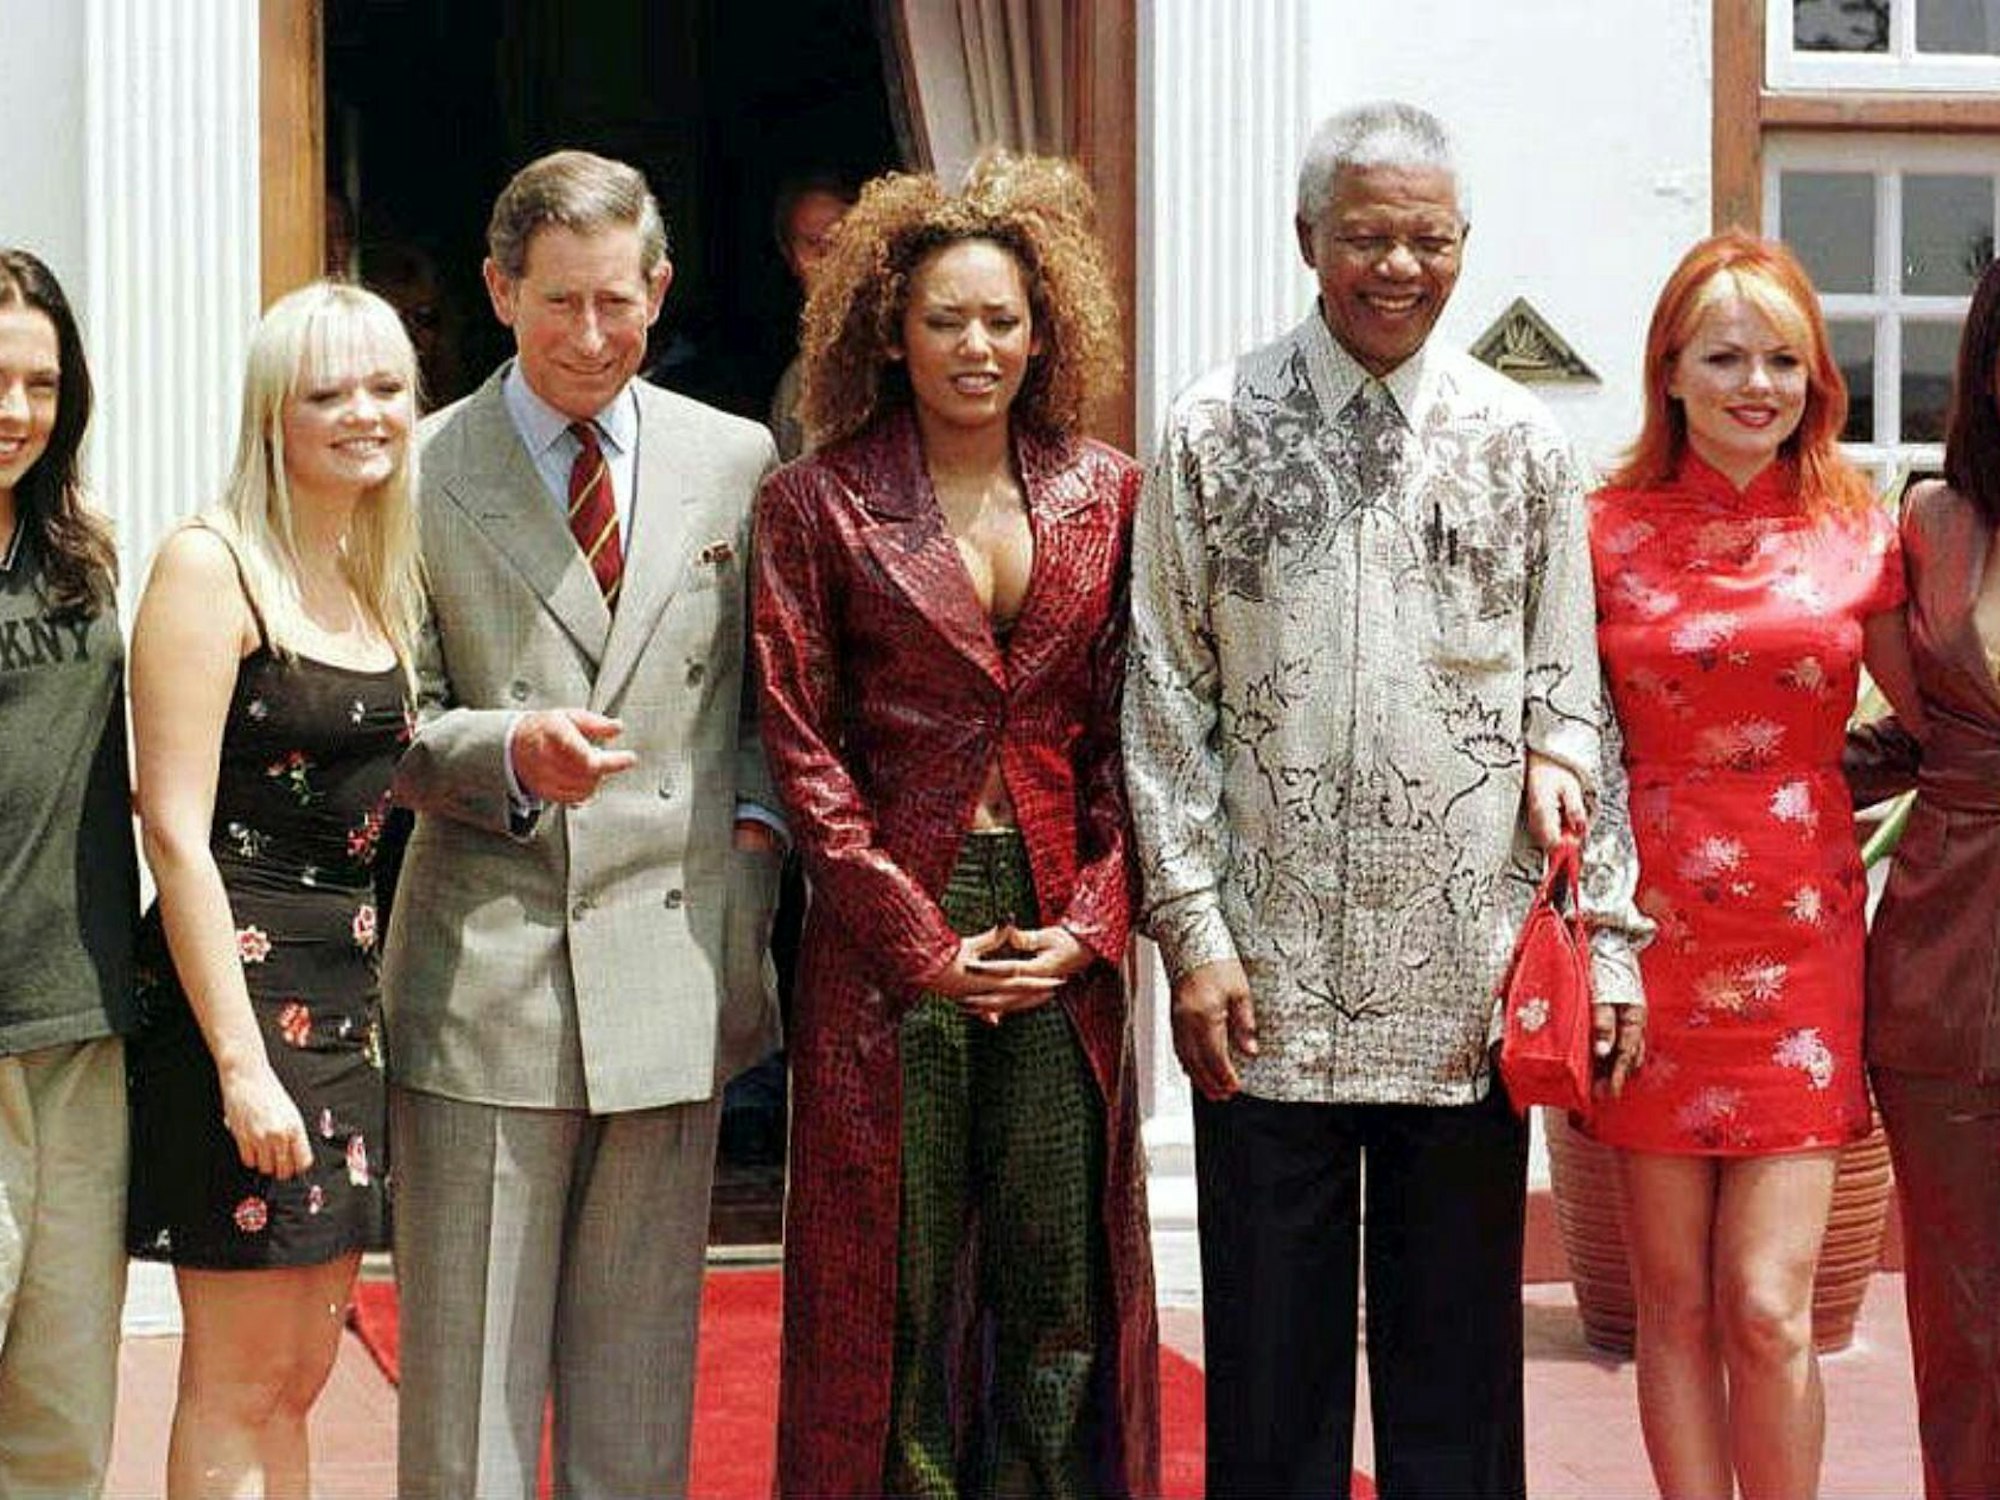 Der Prinz von Wales und der südafrikanische Präsident Nelson Mandela mit den Spice Girls bei einem Empfang.